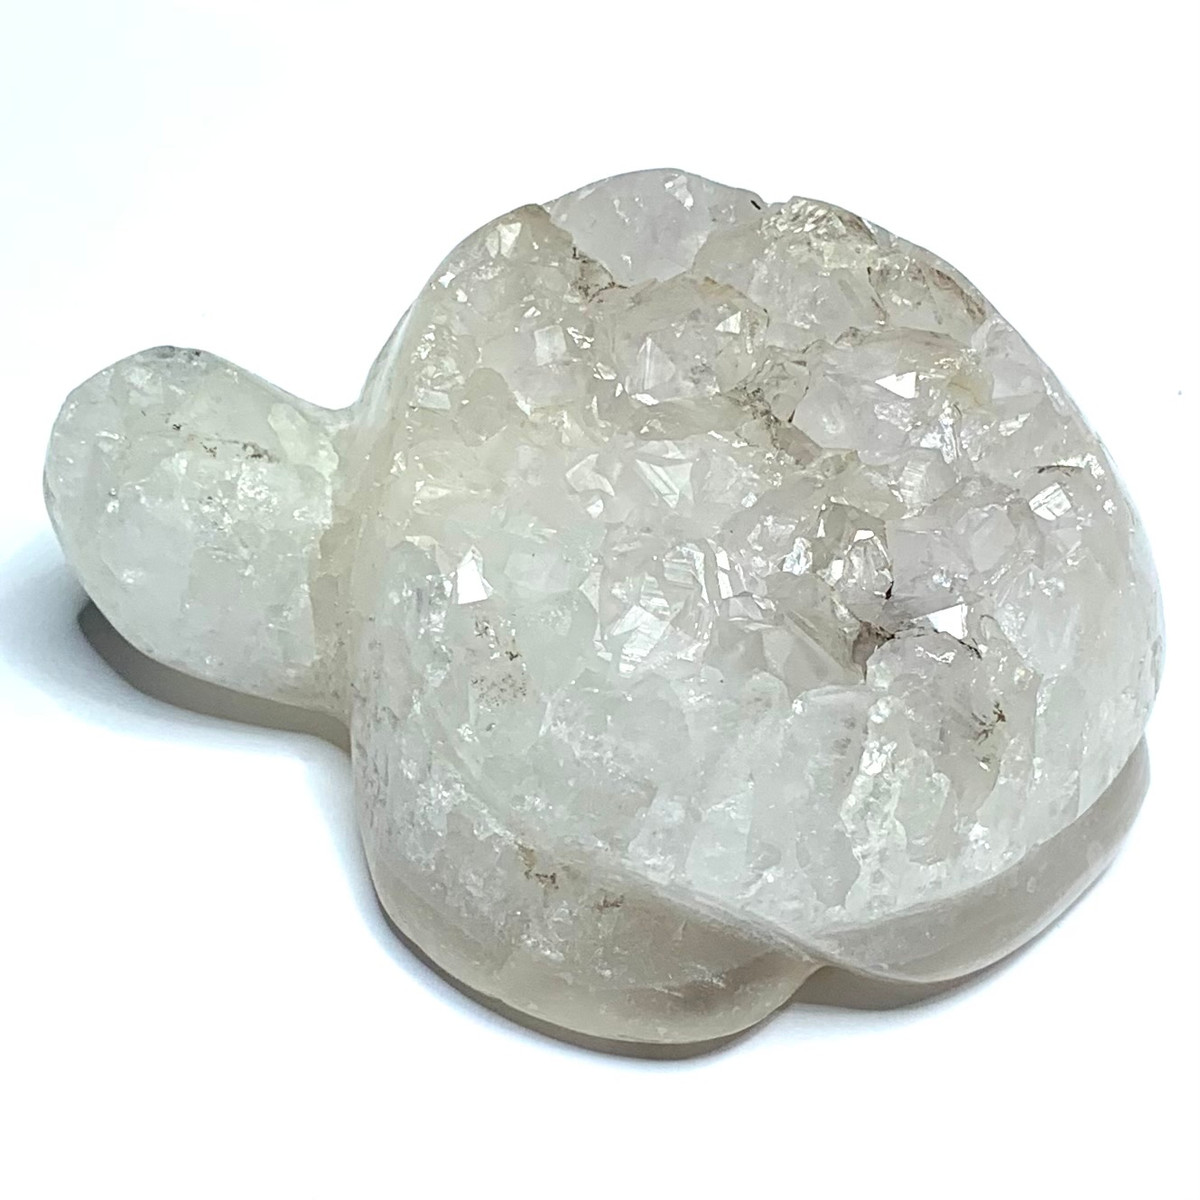 One of a Kind Quartz Druzy Turtle Stone-3 x 2 1/4 x 1 1/4" (NC4616)